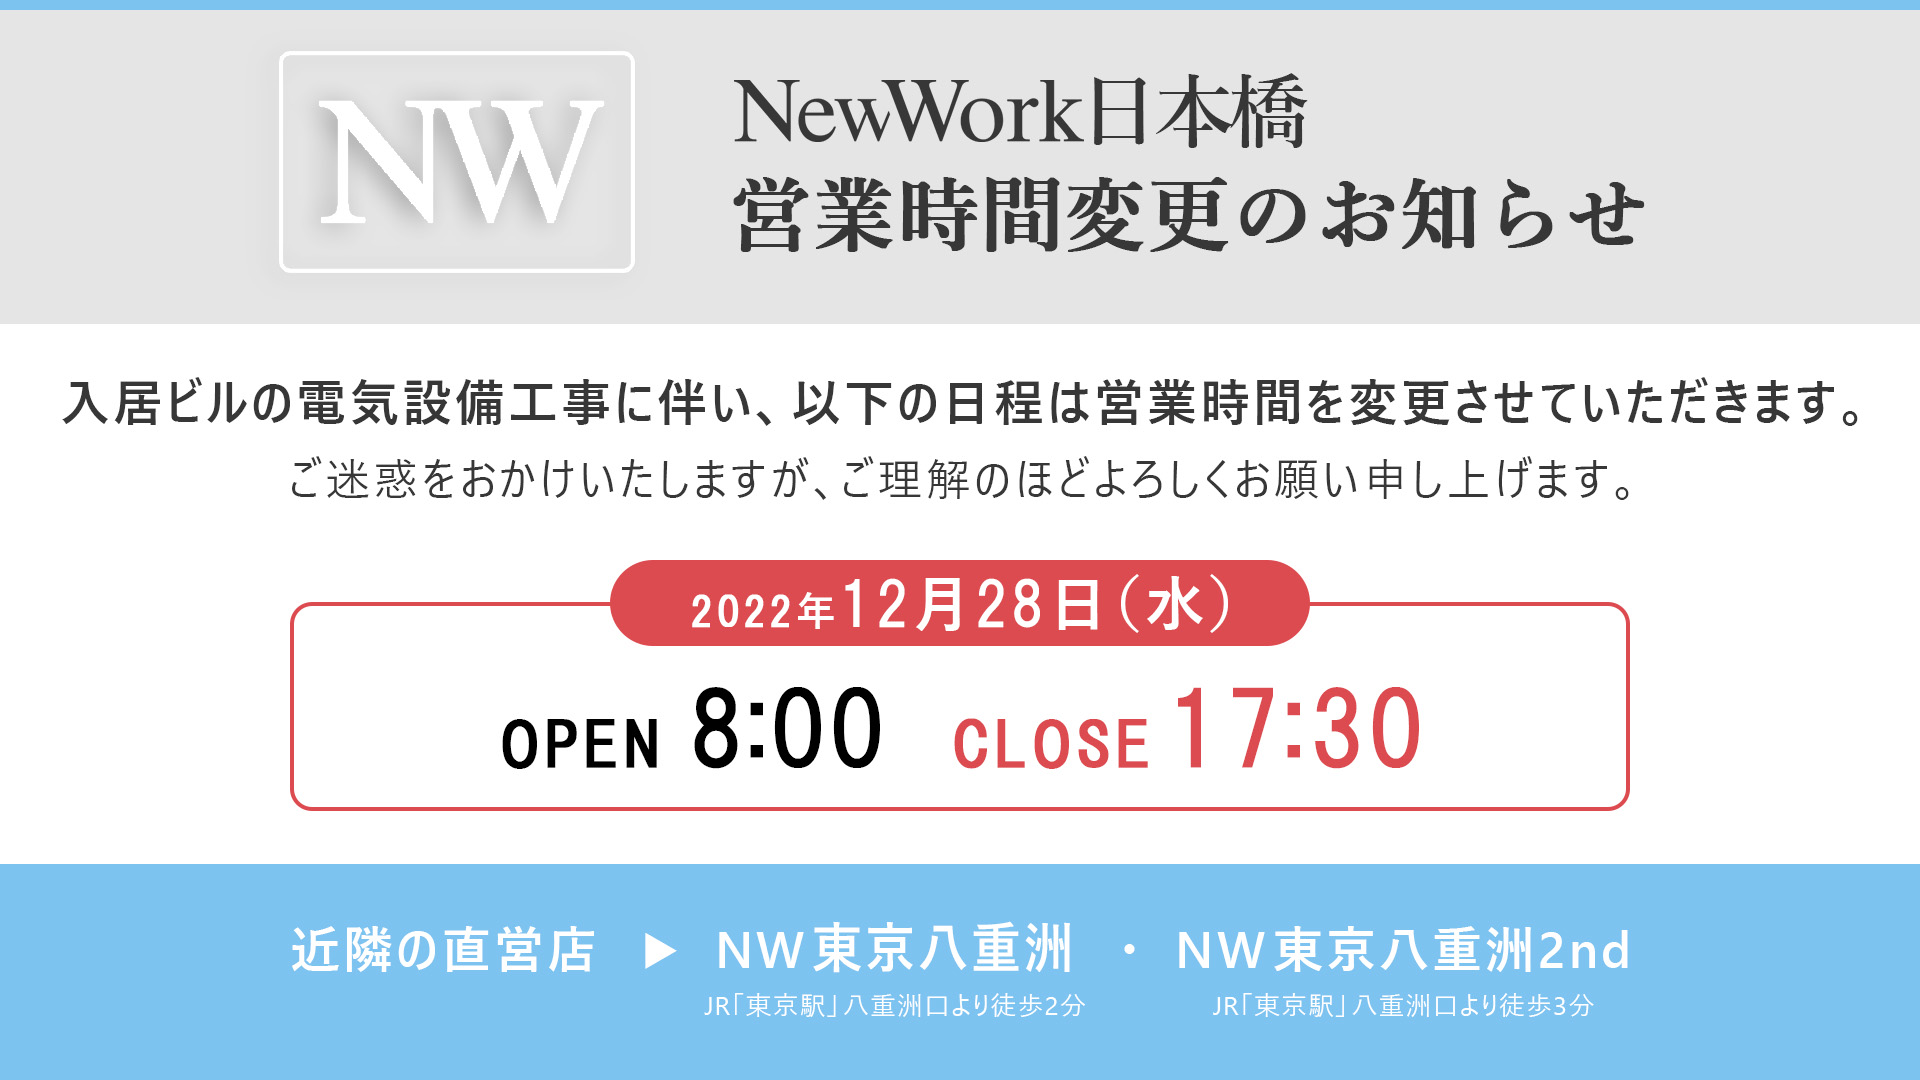 「NewWork 日本橋」営業時間変更